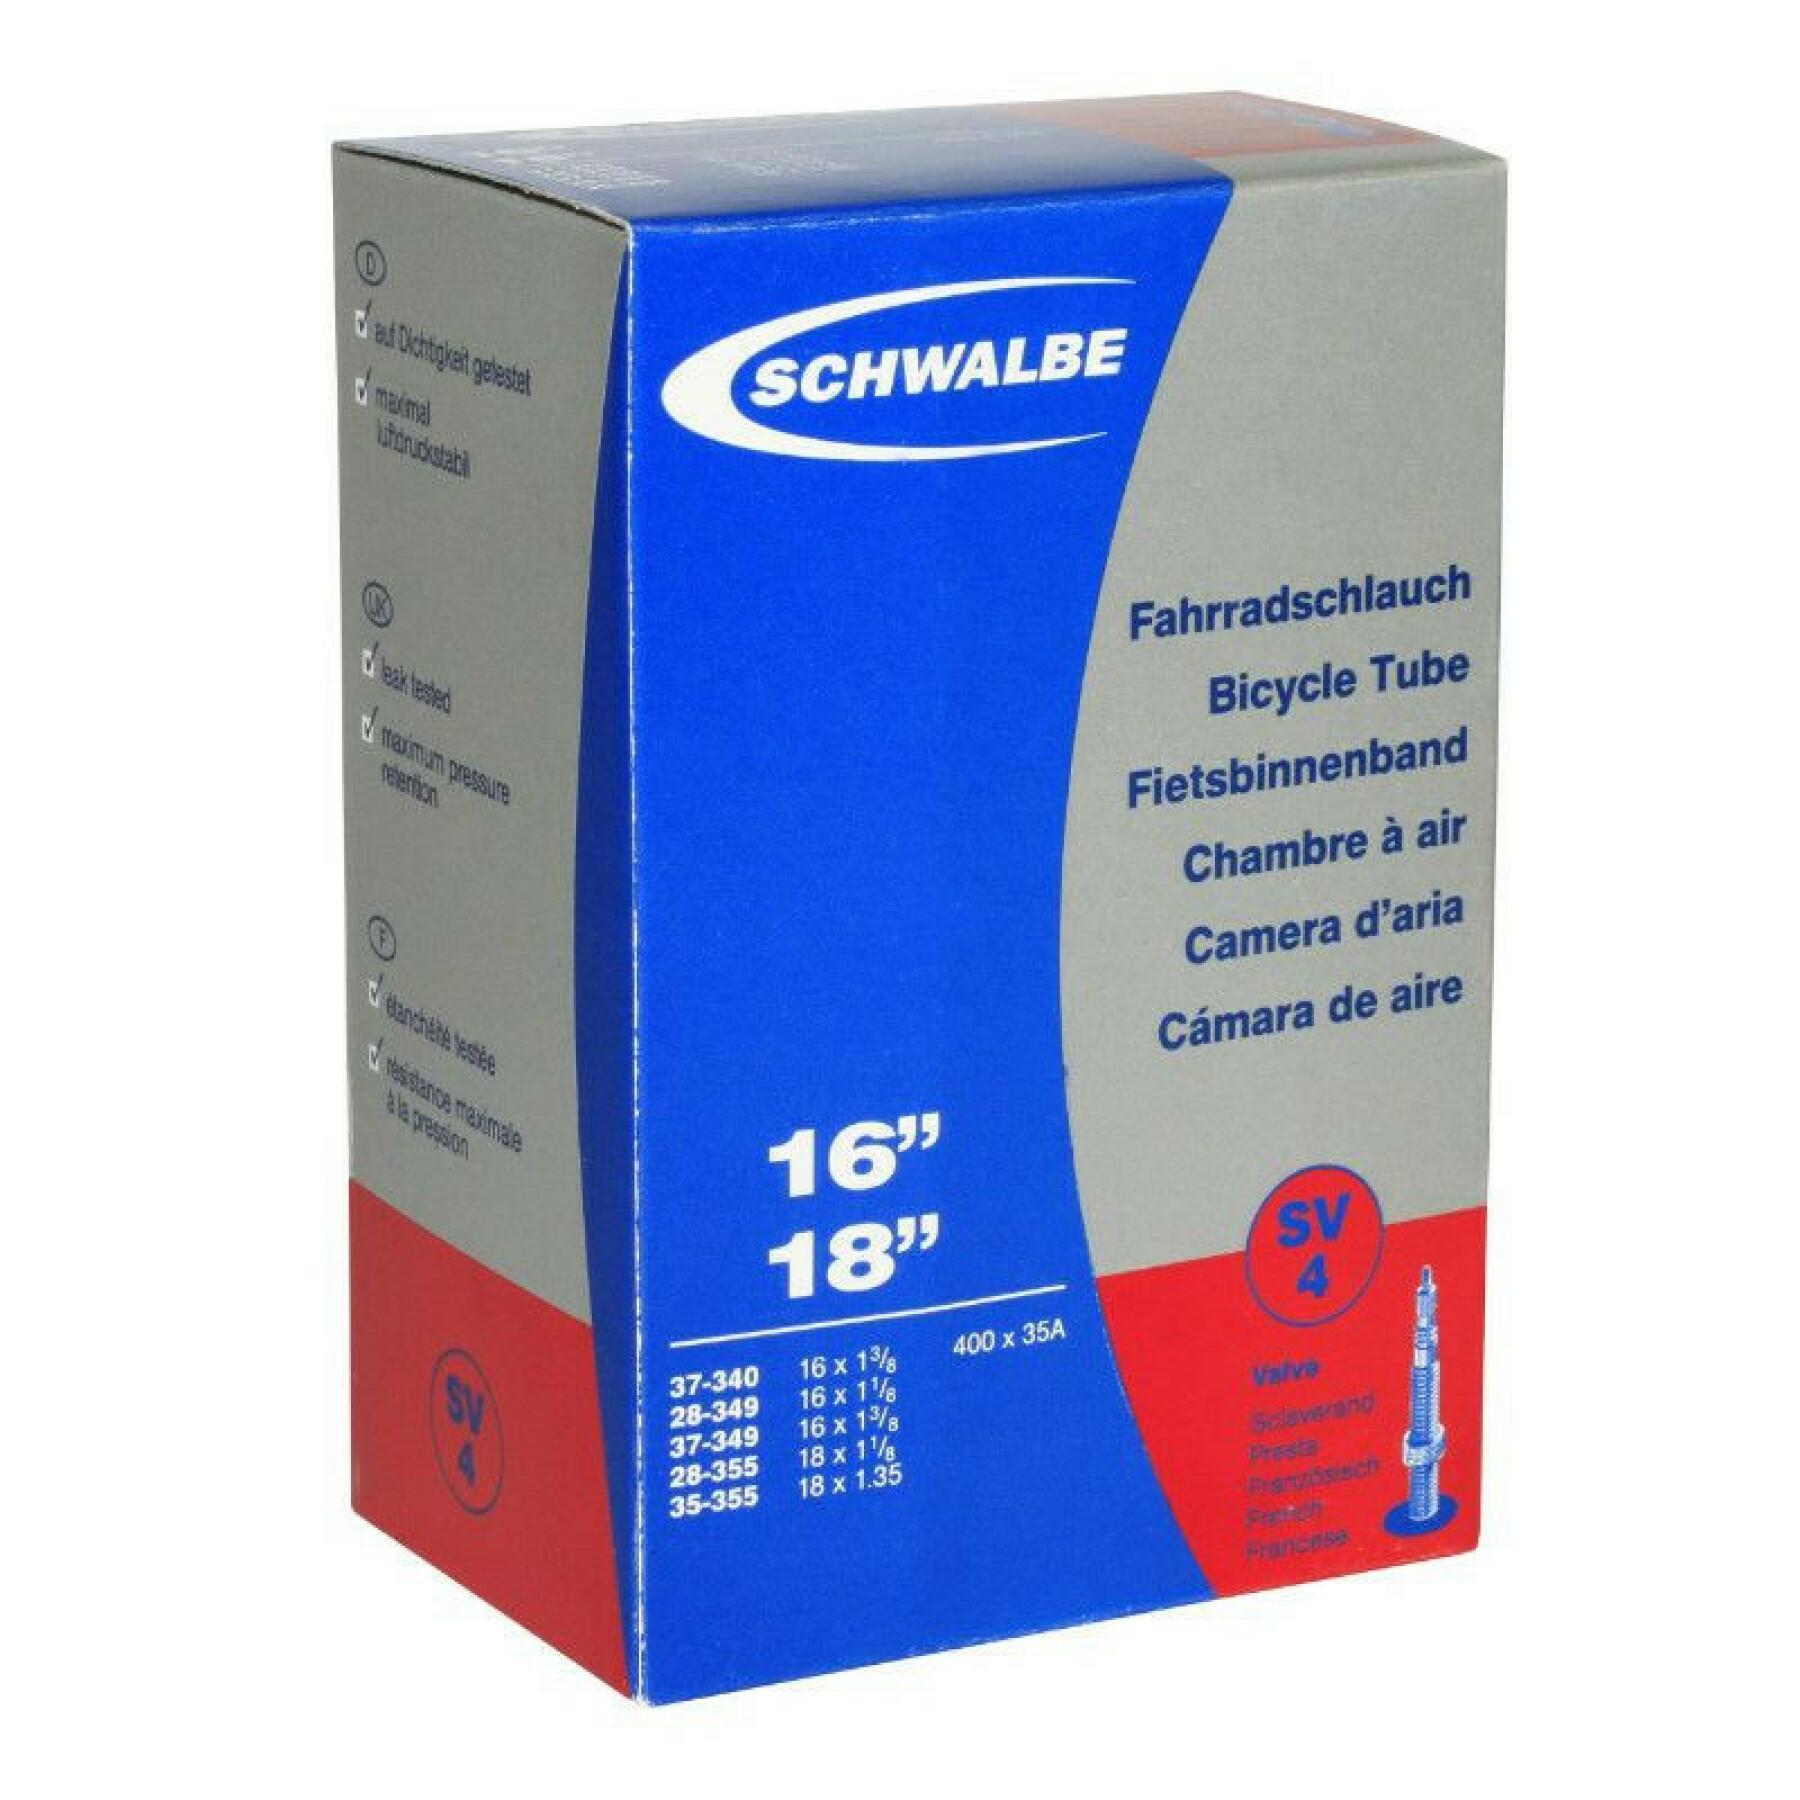 Chambre à air valve Presta Schwalbe 16 x 1 3/8 à 18x1.35 400a